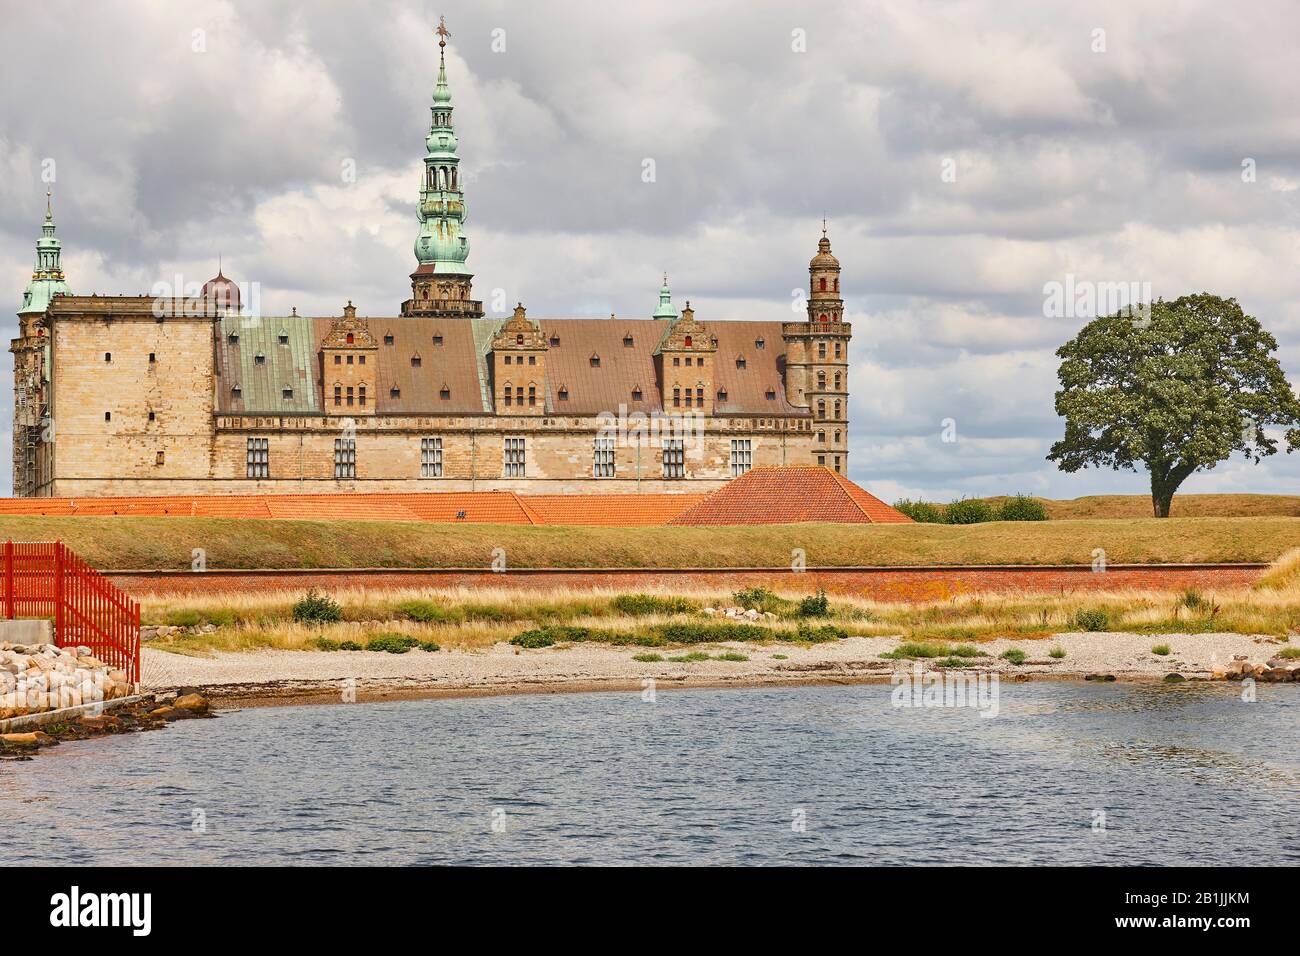 Kronborg Helsingor Elsinor castle fortification and tower. Denmark Stock Photo